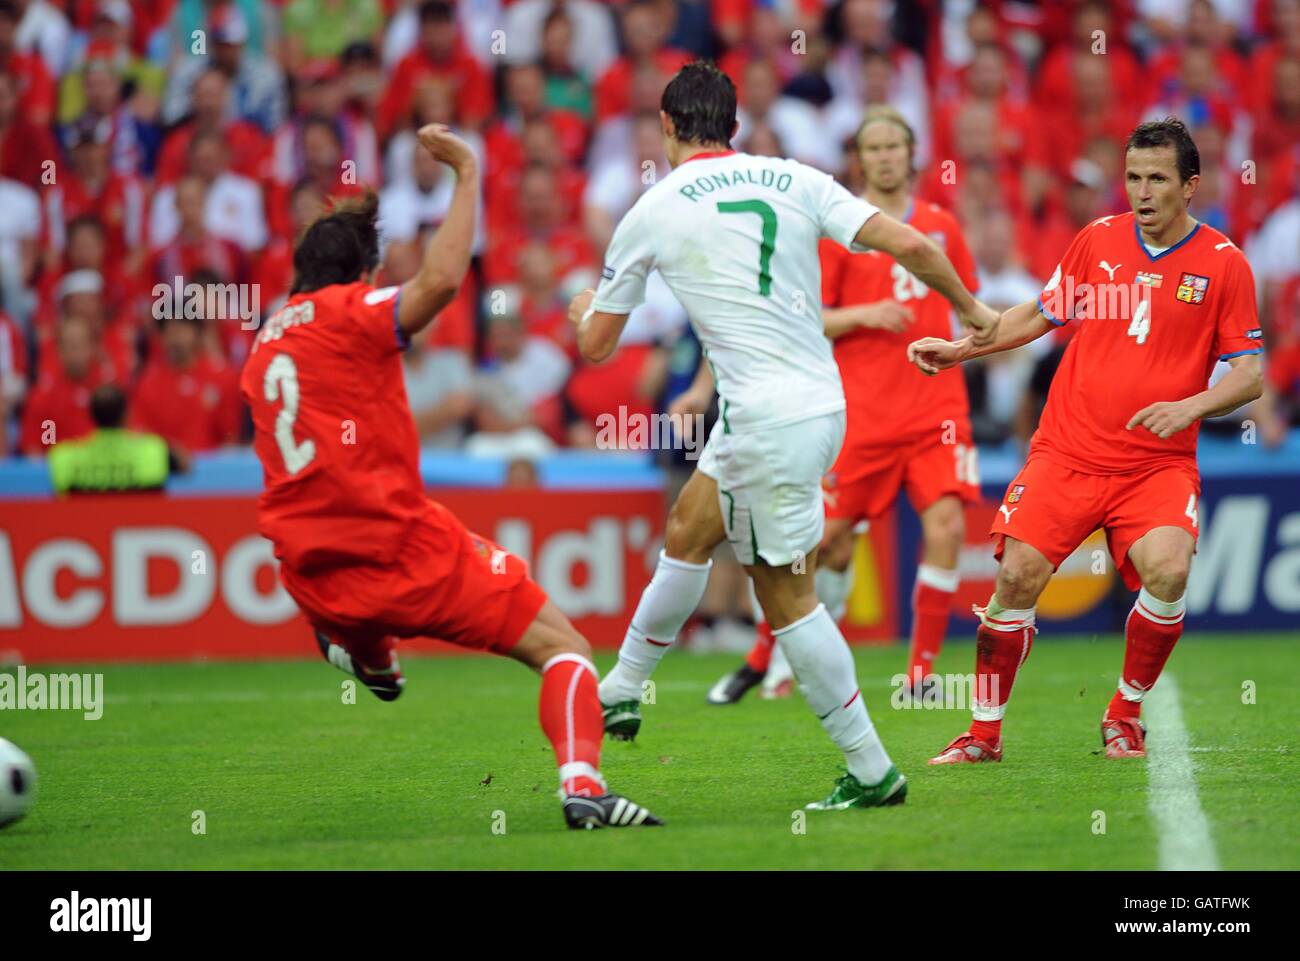 Calcio - Campionato europeo UEFA 2008 - Gruppo A - Repubblica Ceca / Portogallo - Stade de Geneve. Cristiano Ronaldo in Portogallo segna il terzo obiettivo del gioco. Foto Stock